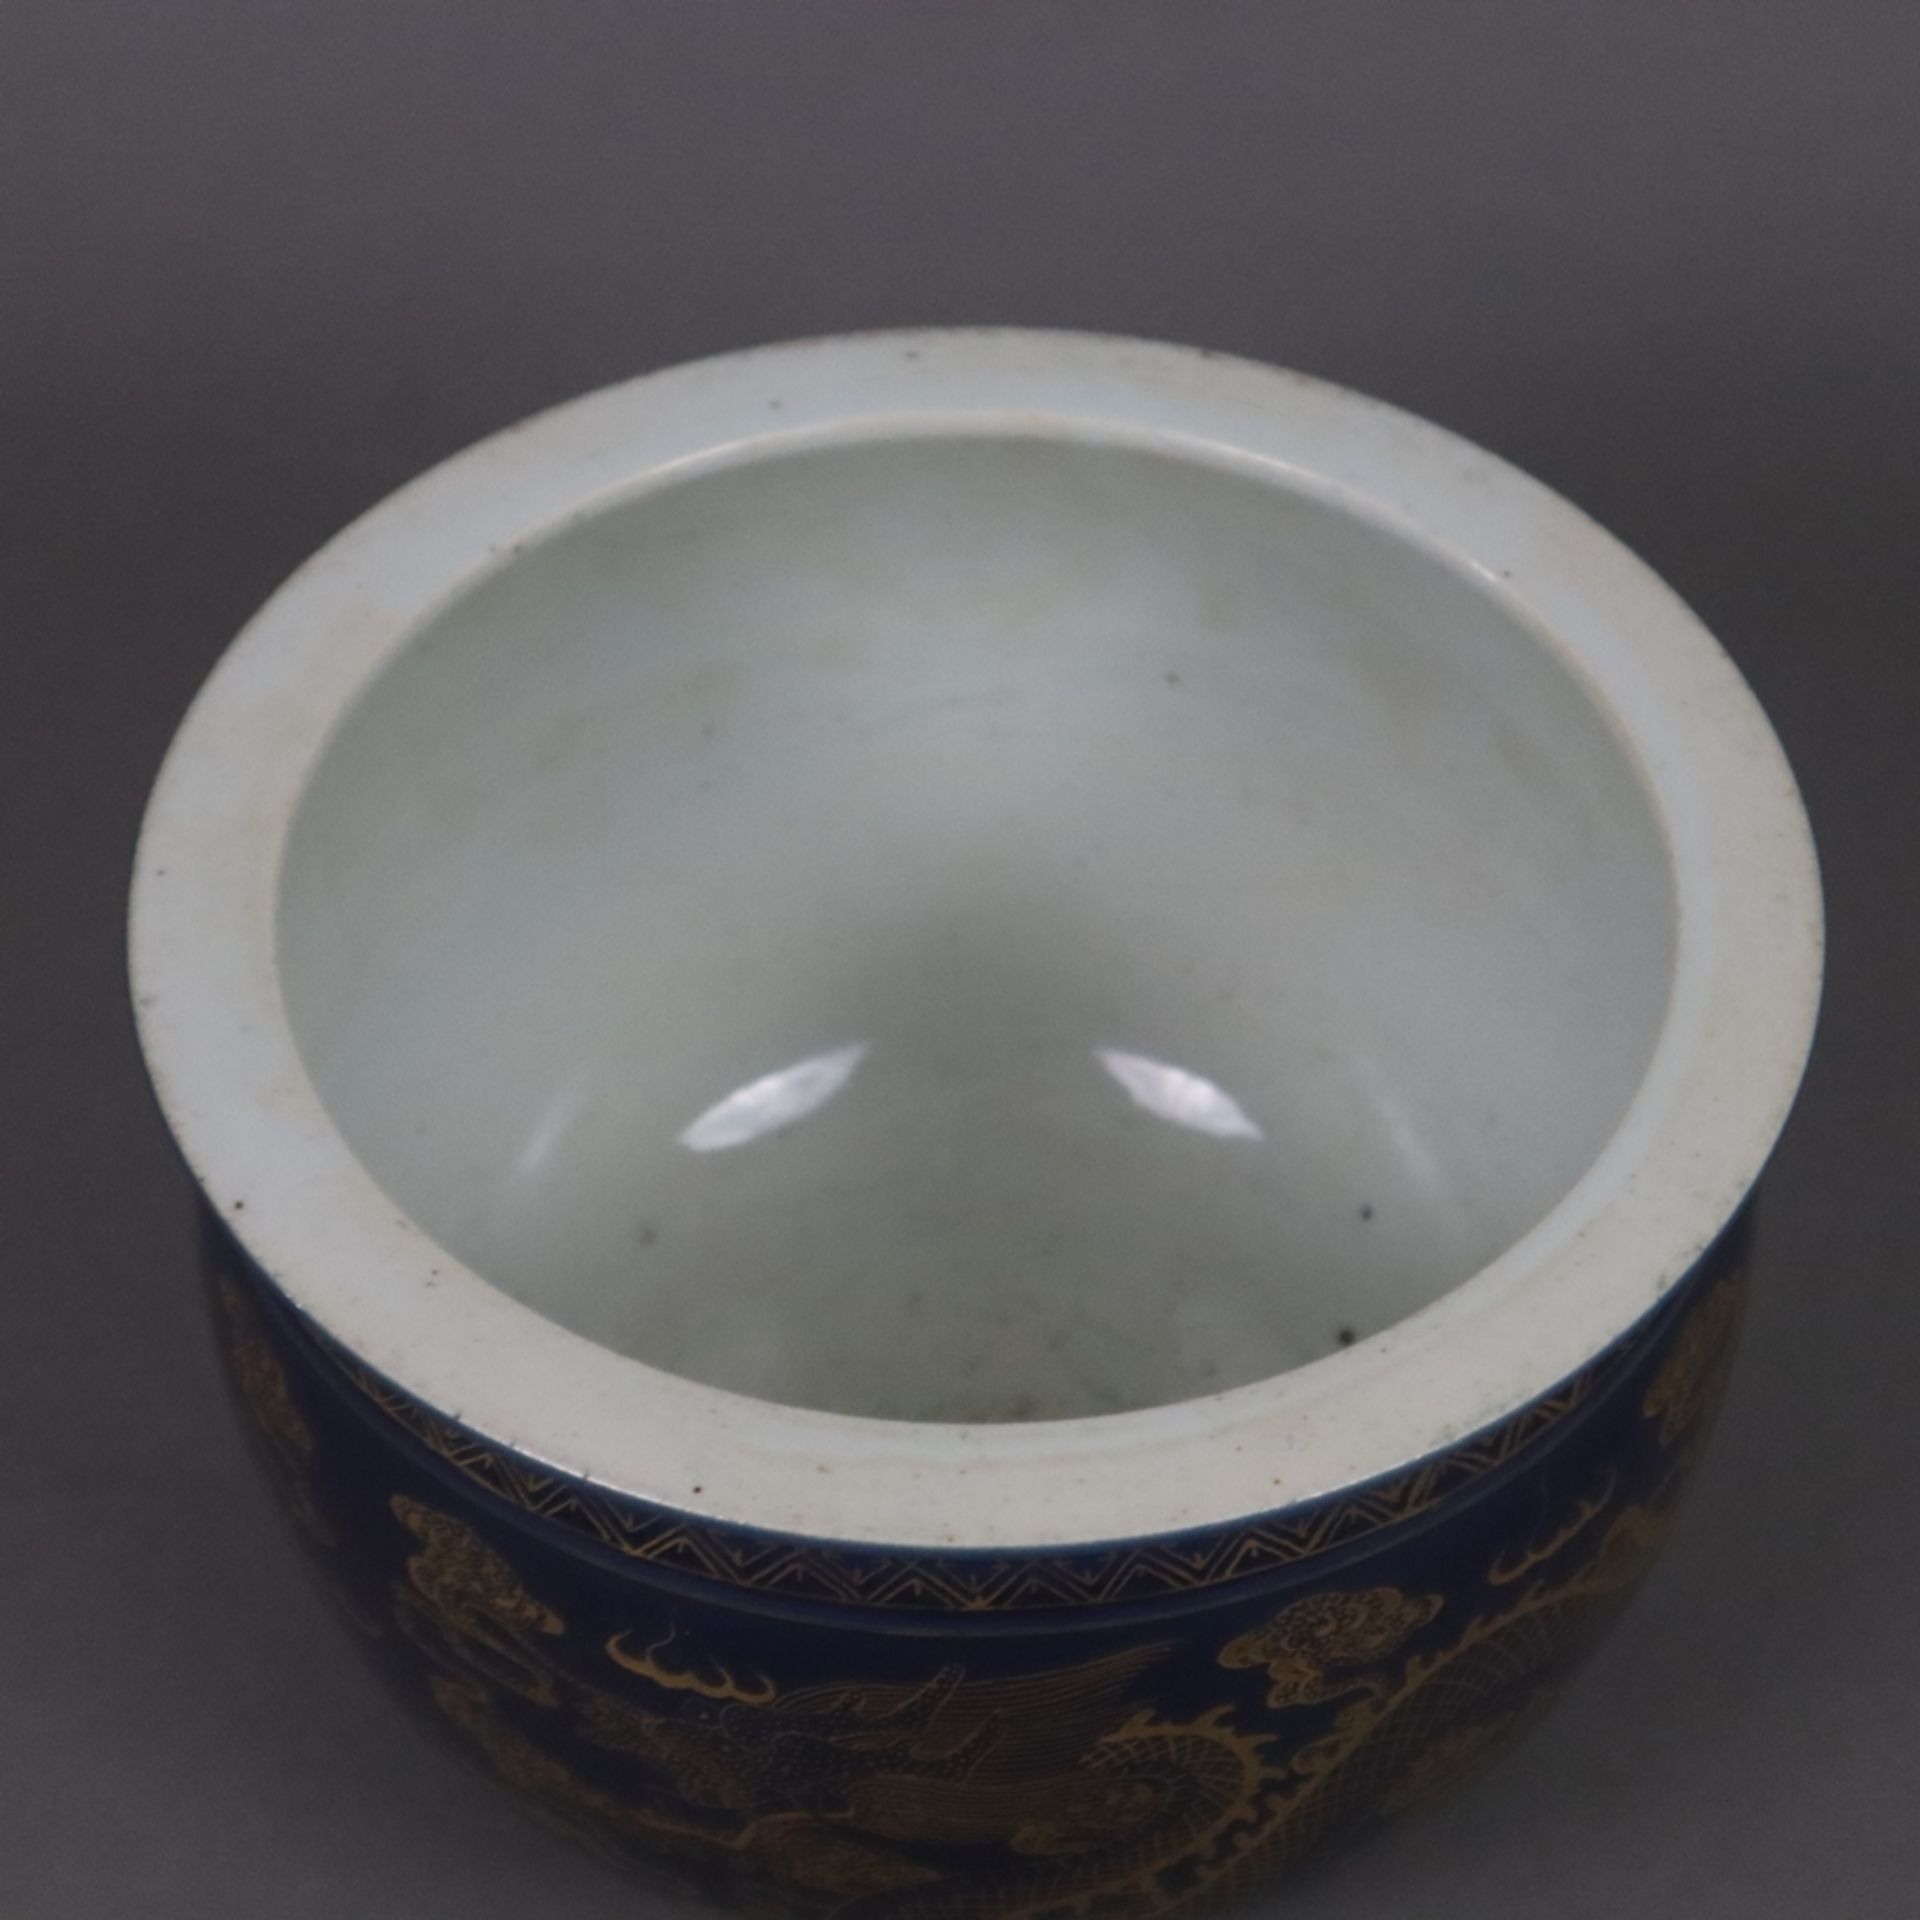 Cachepot - China, bauchiger Korpus, leicht ausgestellter, glatter Rand, außen kobaltblaue Glasur mi - Bild 2 aus 7